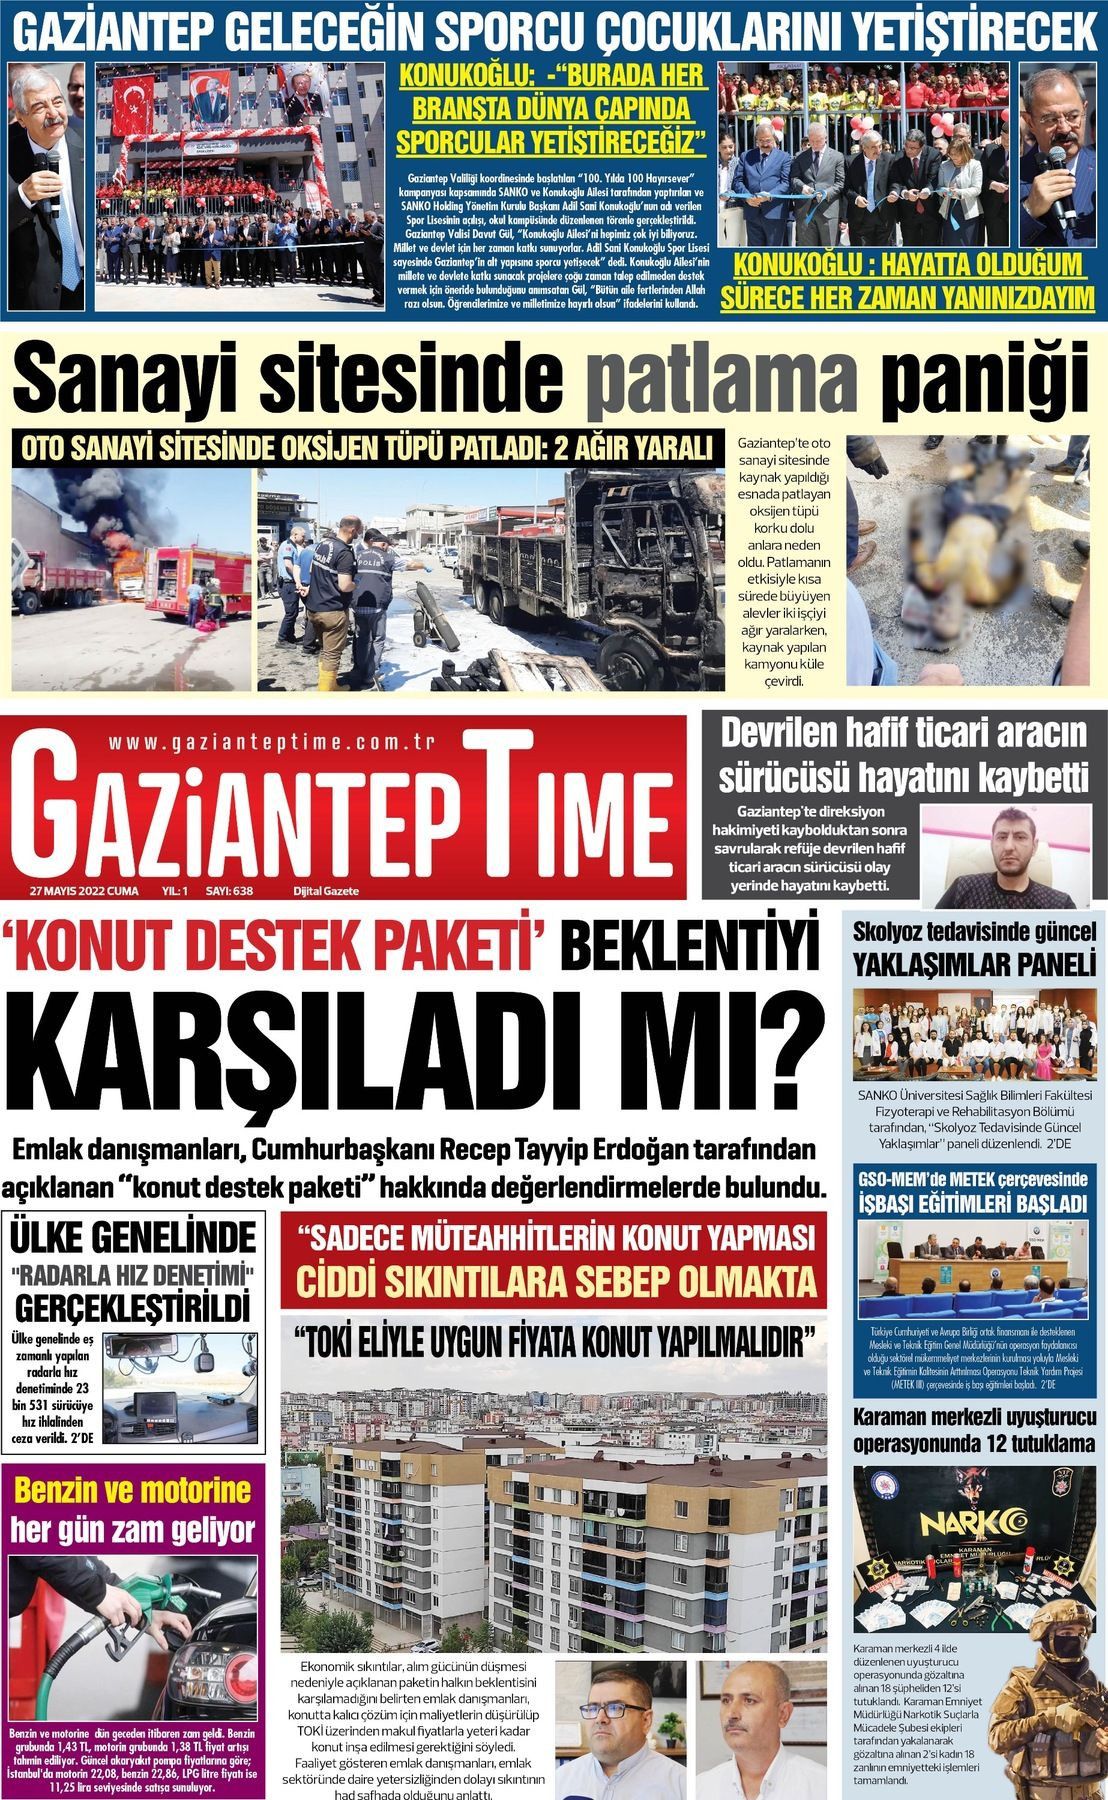 27 Mayıs 2022 Gaziantep Time Gazete Manşeti